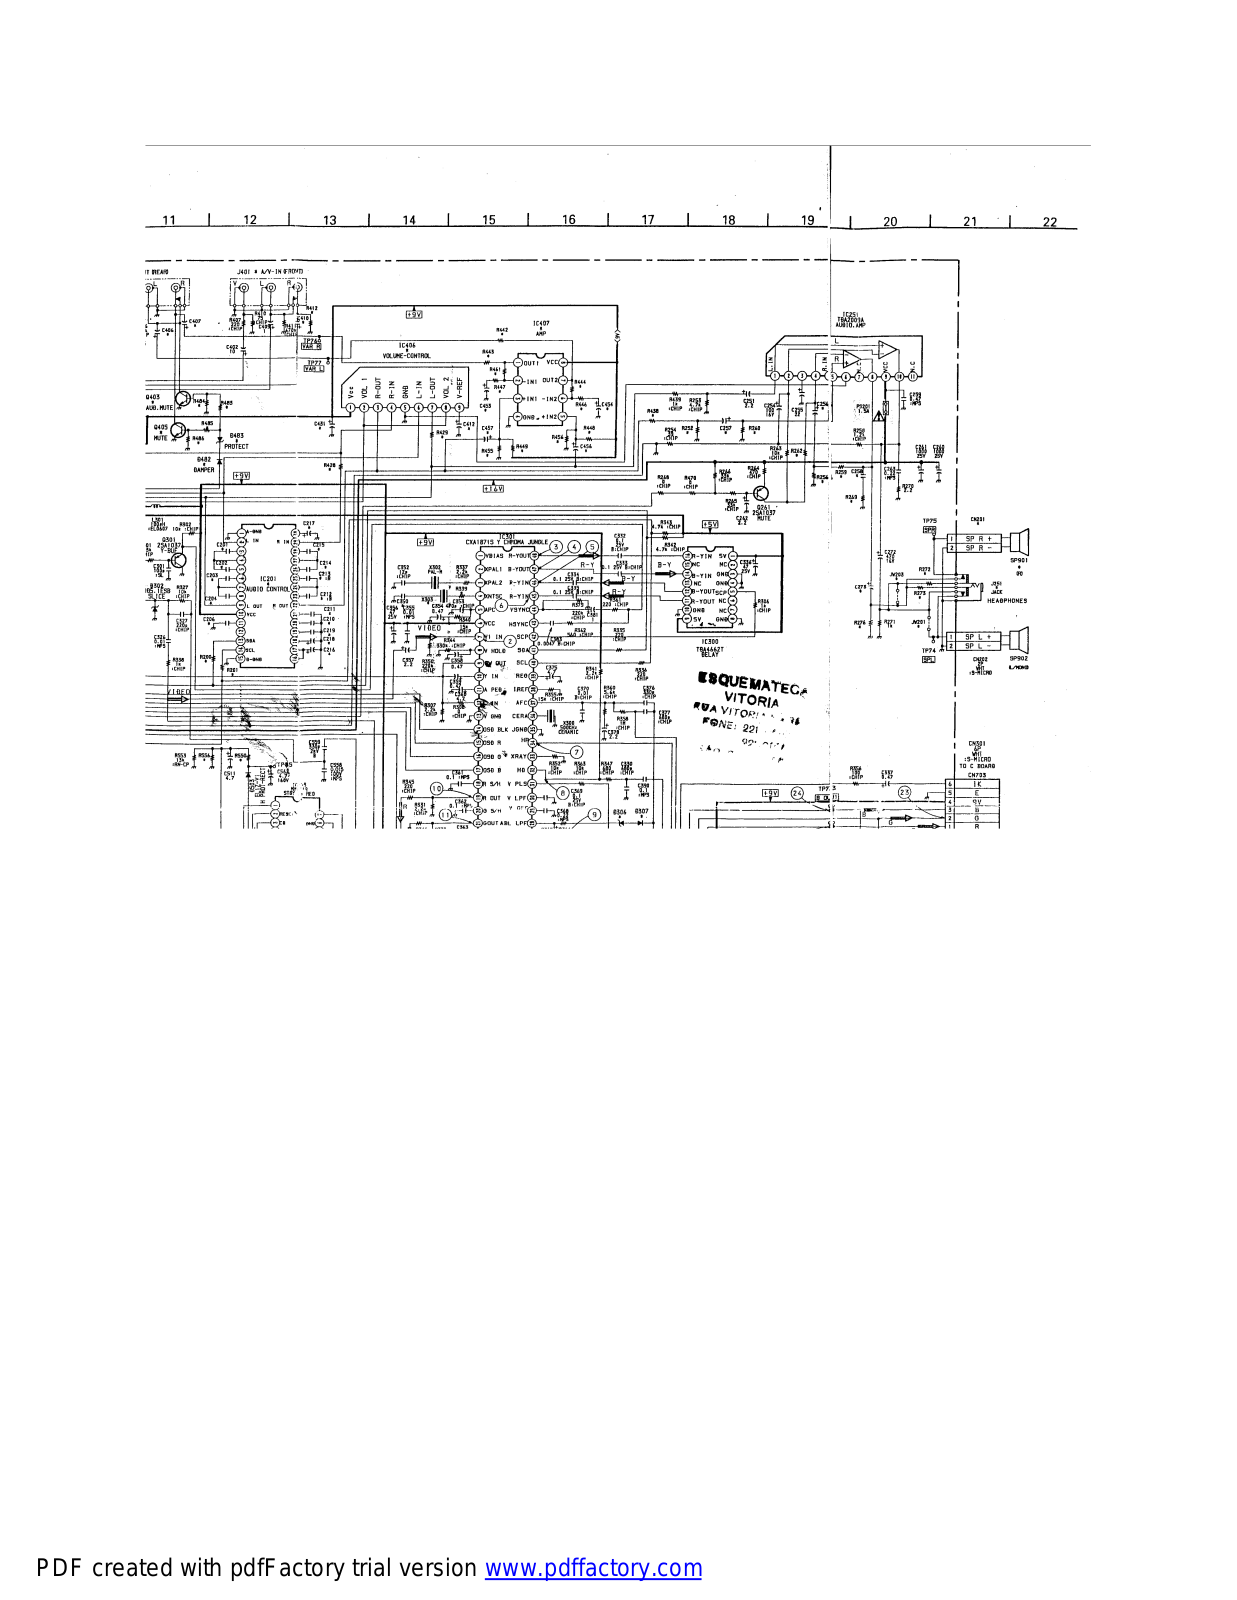 Sony KV-2172S Diagram